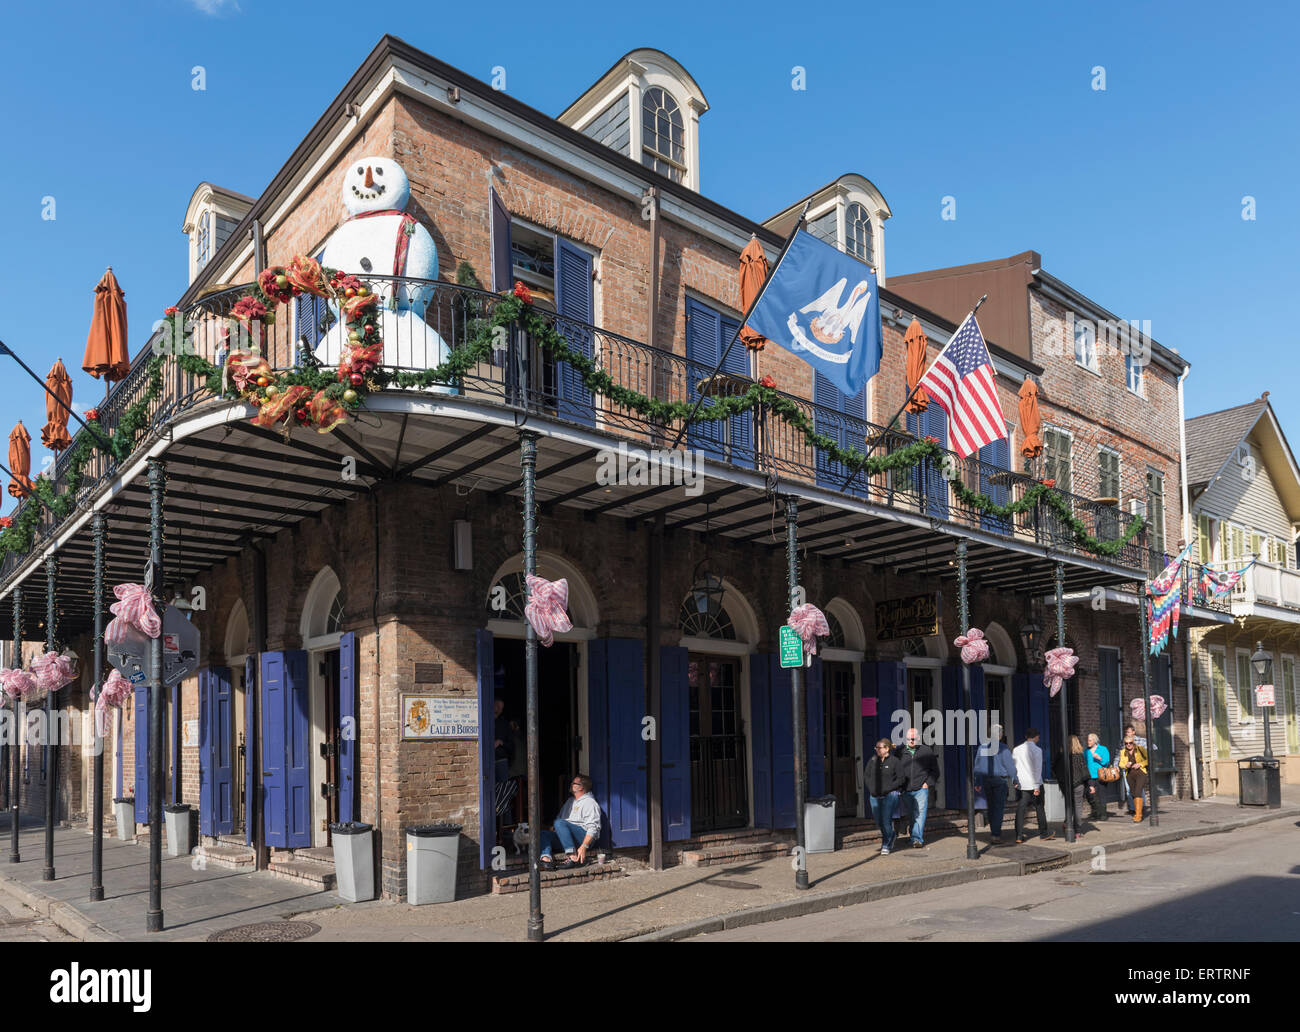 Un bar à l'angle de la rue Bourbon Street dans le quartier français de La Nouvelle-Orléans, Louisiane, Etats-Unis Banque D'Images